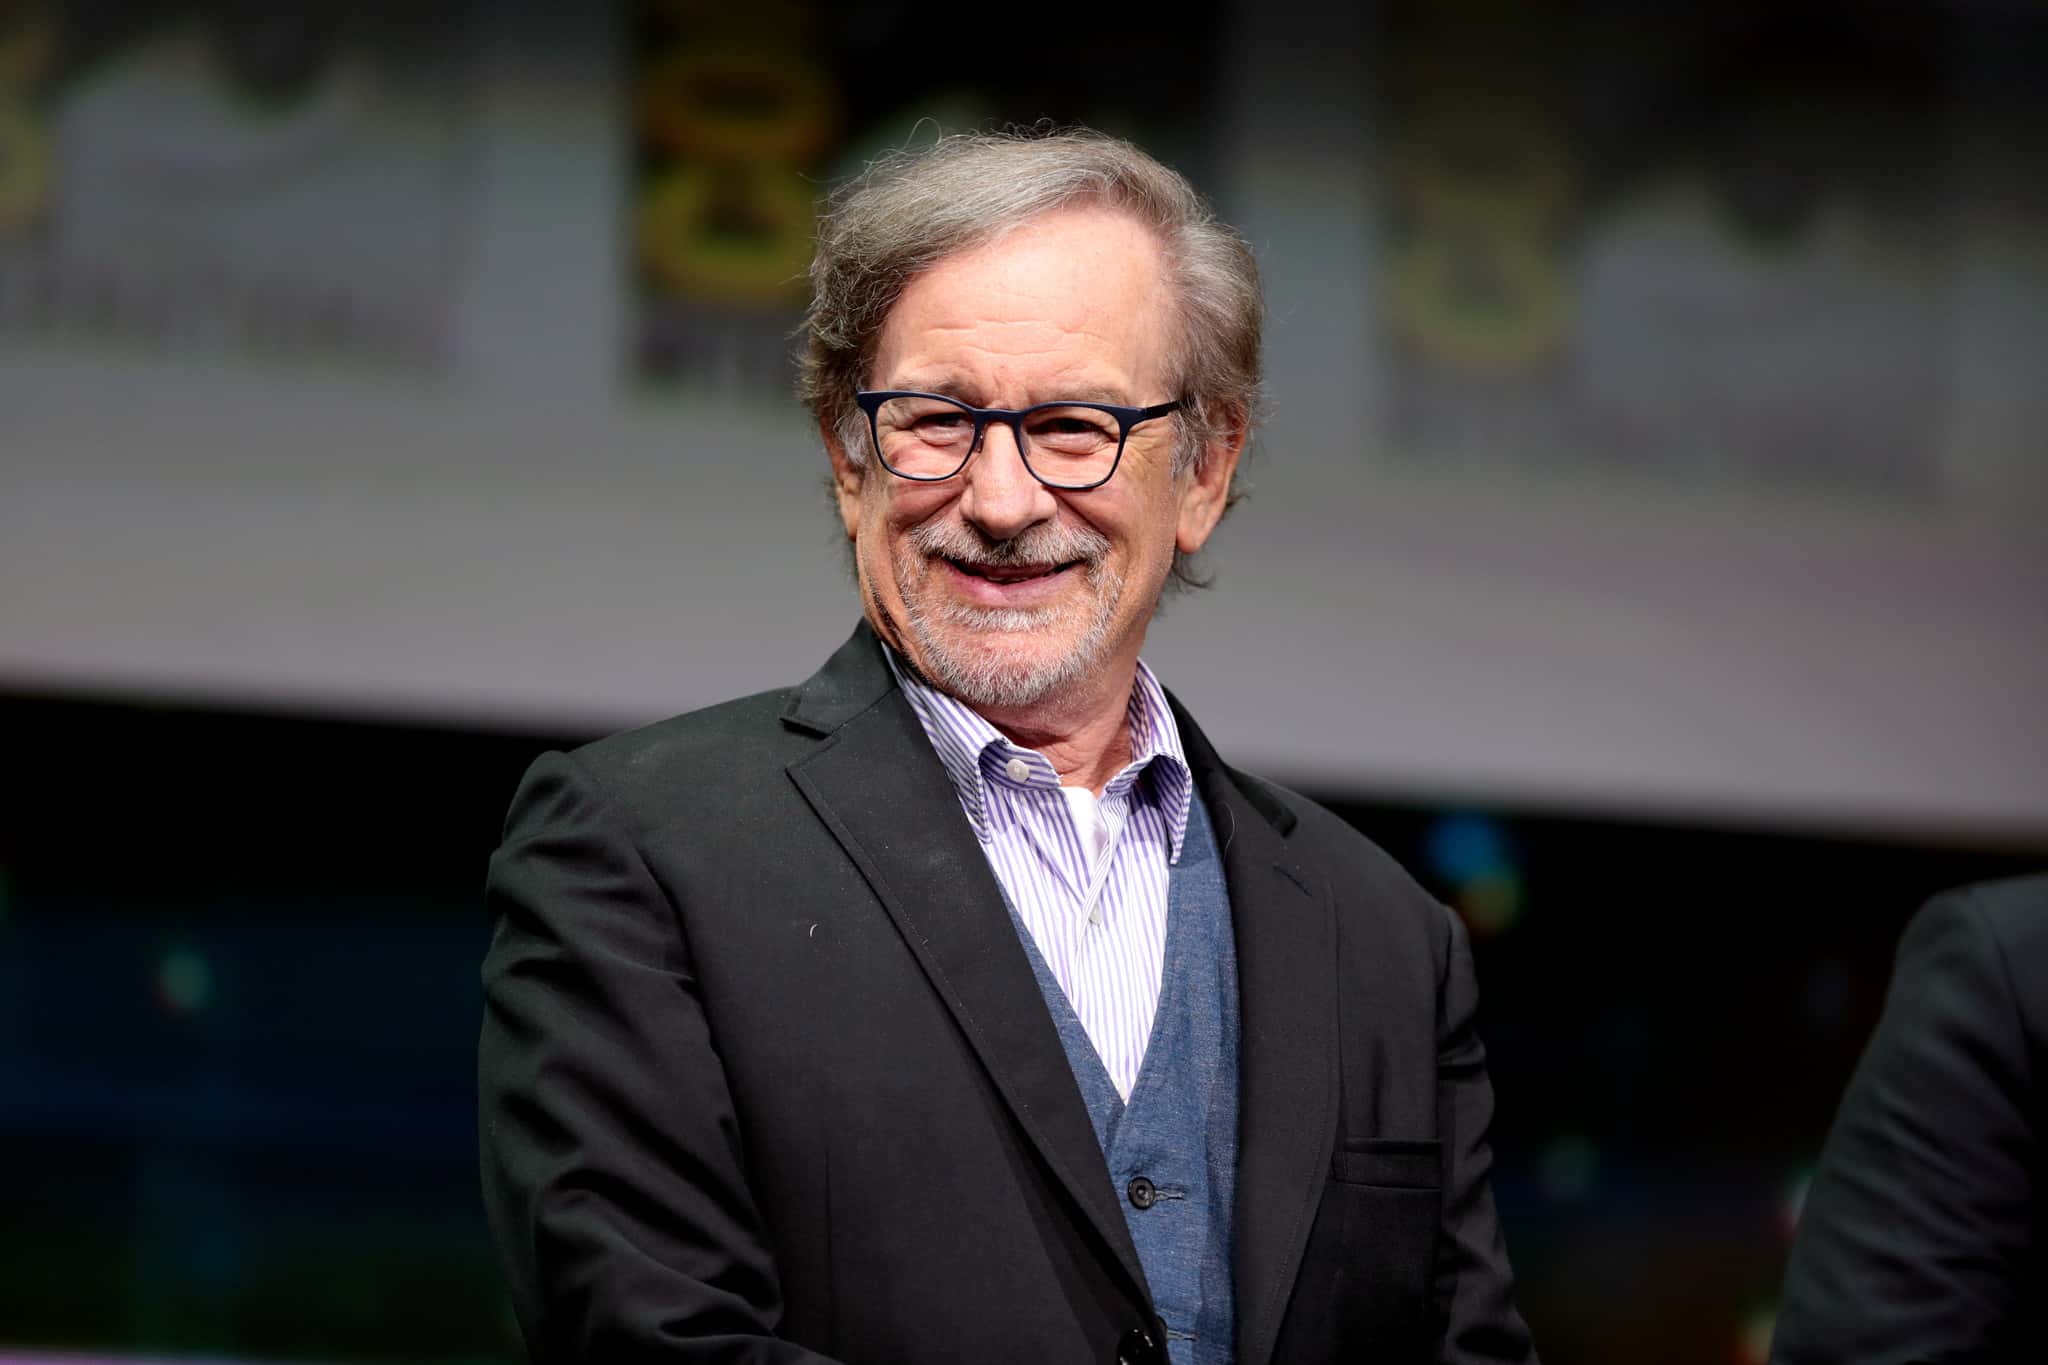  Steven Spielberg films facts 